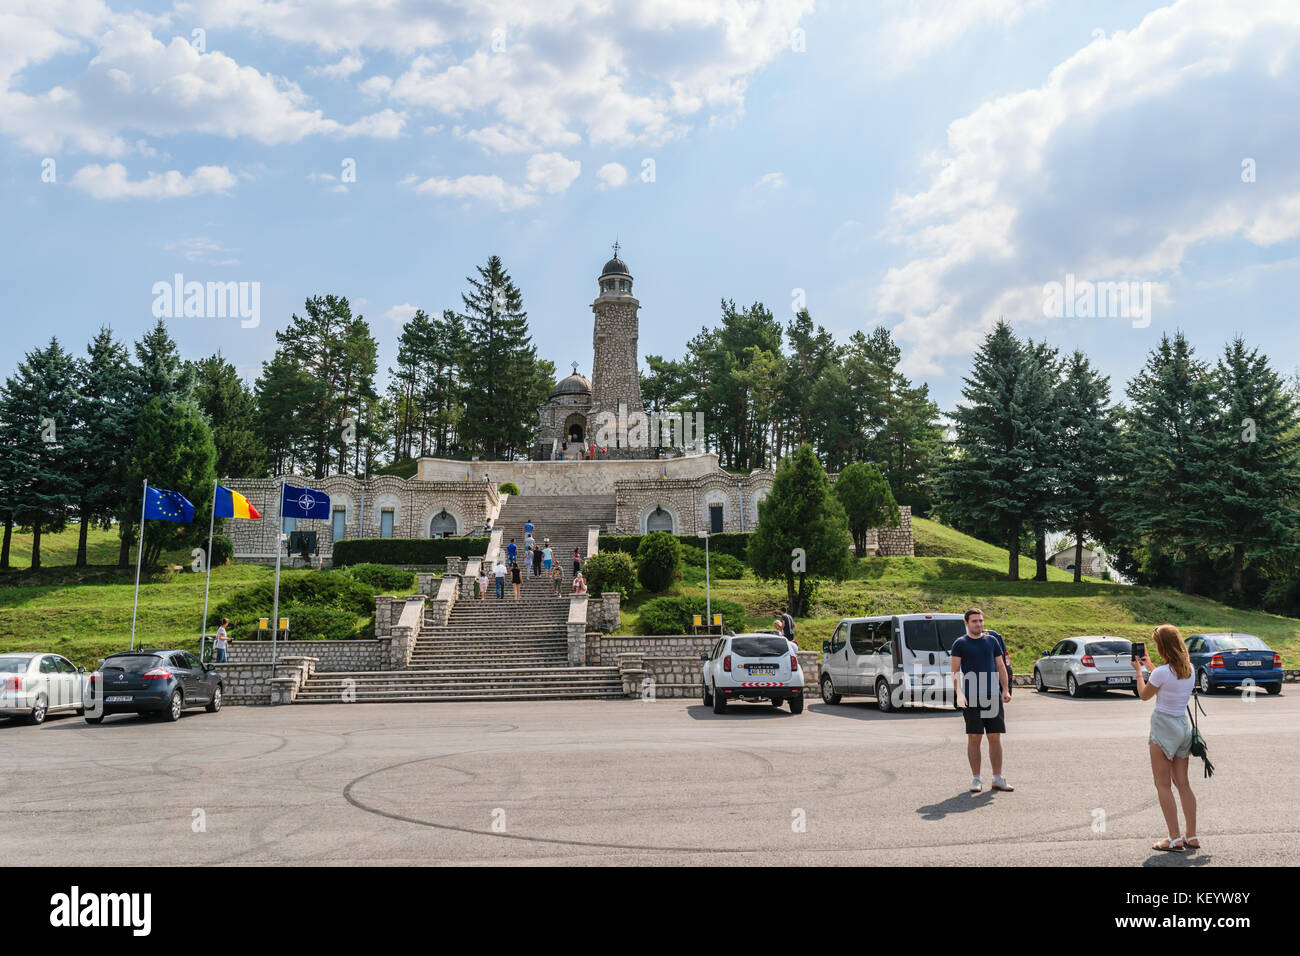 Arges, Romania - agosto 15, 2017: turista che visita il mausoleo degli eroi situato sulla collina mateias. Il monumento è dedicato alla prima guerra mondiale 1 h Foto Stock